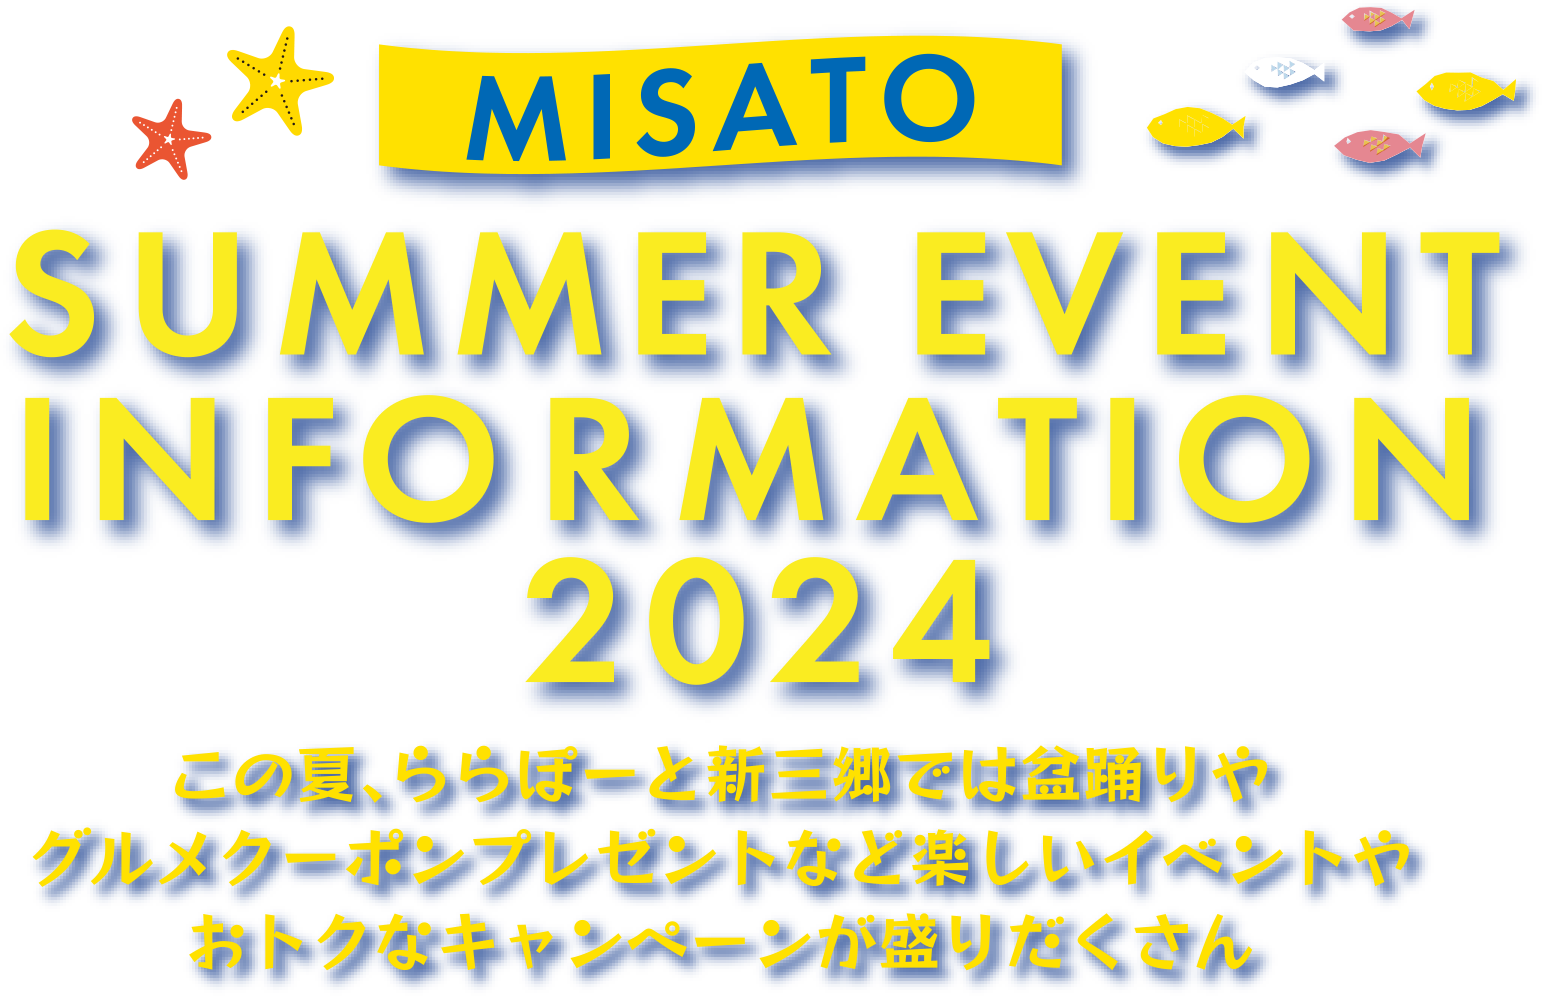 MISATO SUMMER EVENT INFORMATION